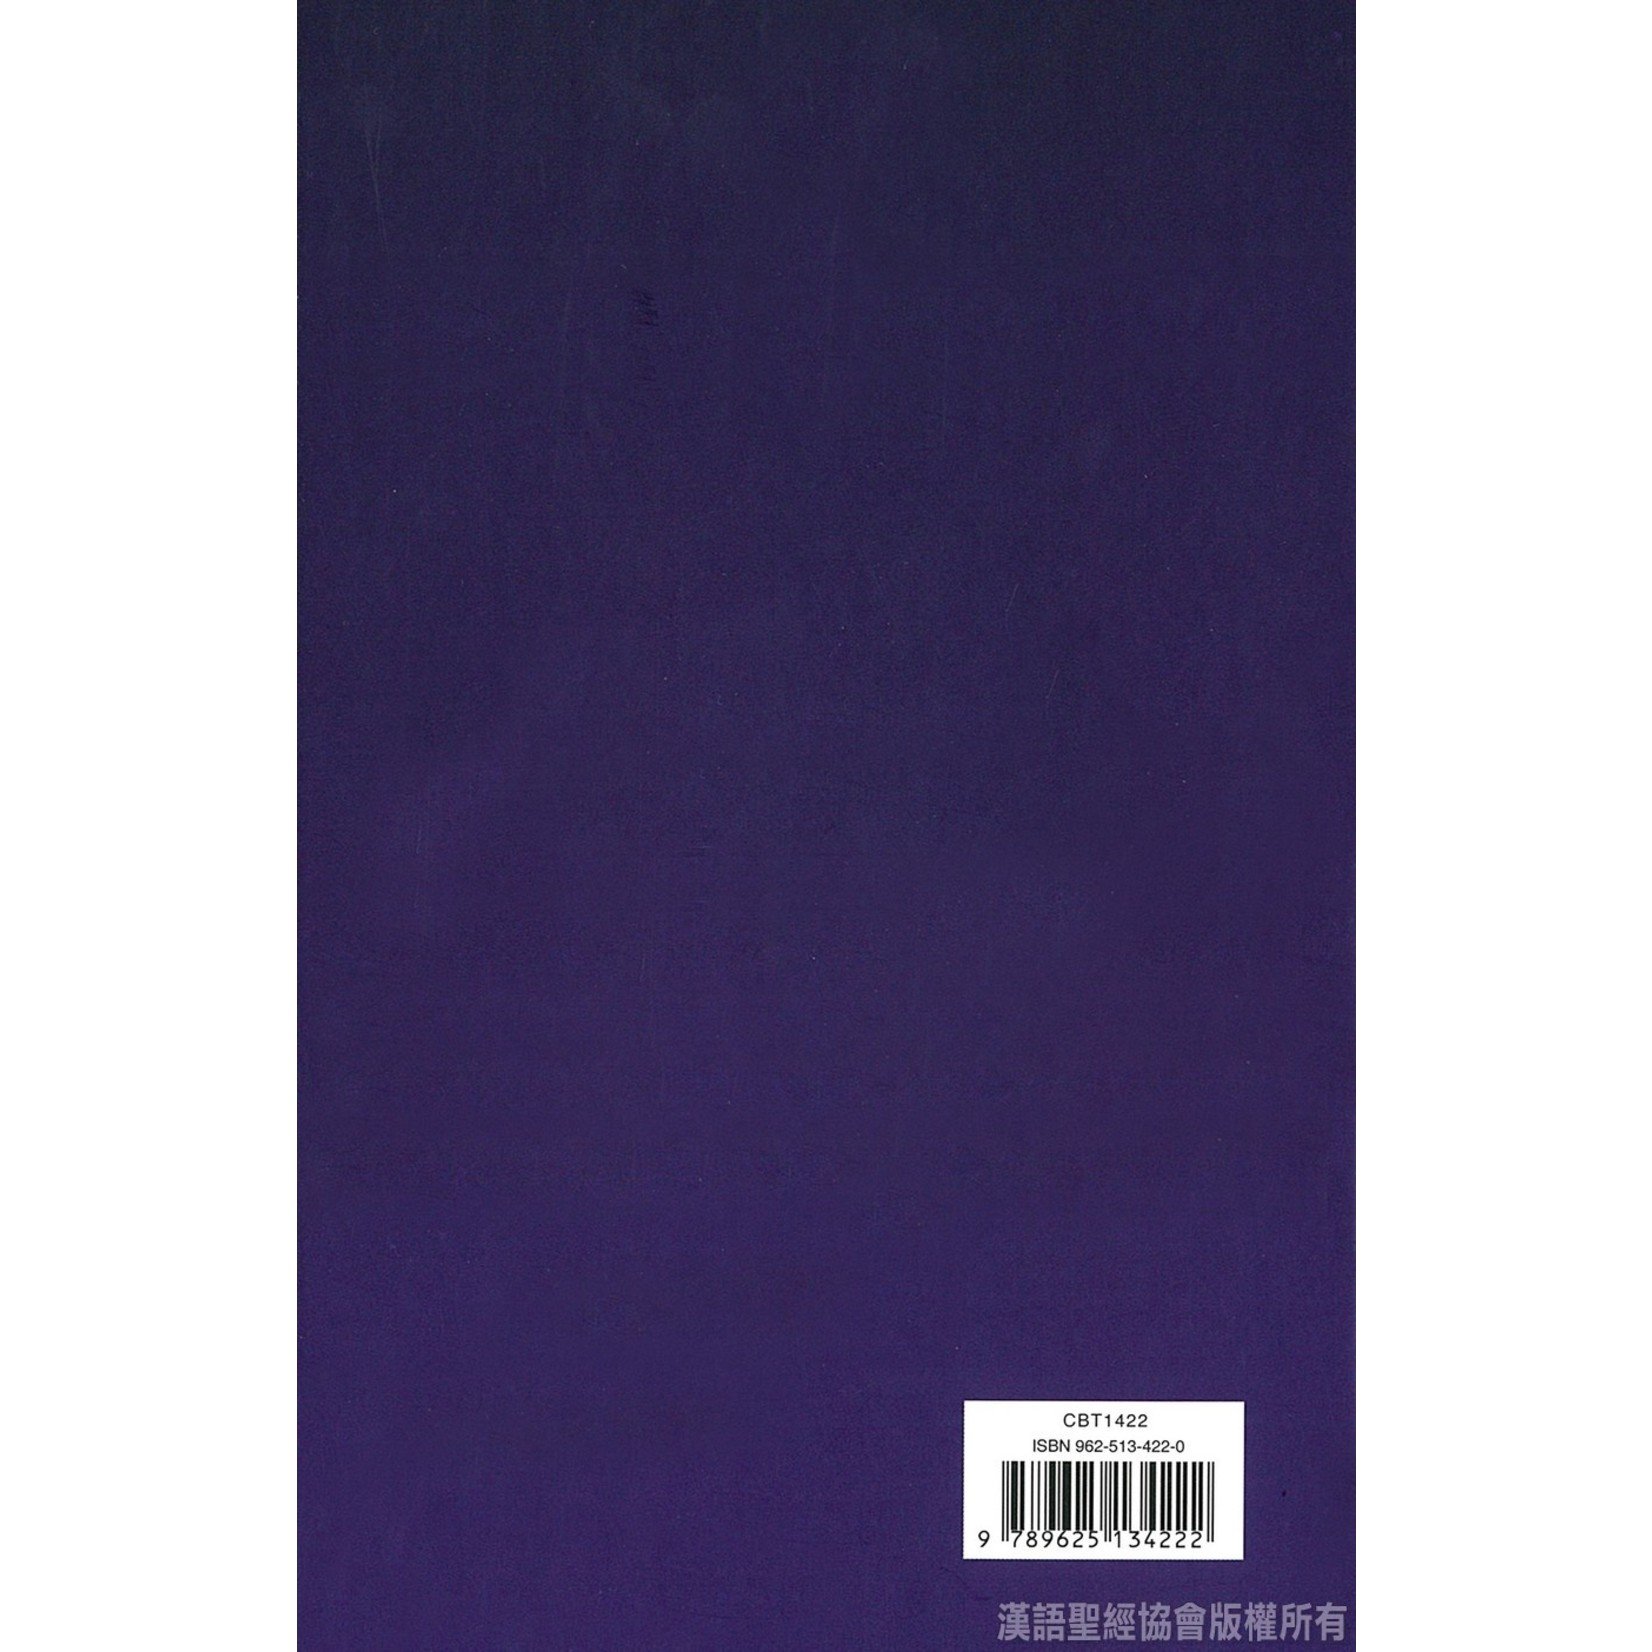 漢語聖經協會 Chinese Bible International 聖經．中英對照．和合本／NIV．輕便本．紫色硬面．白邊 Union Version / NIV (Purple Hardcover White Edge)